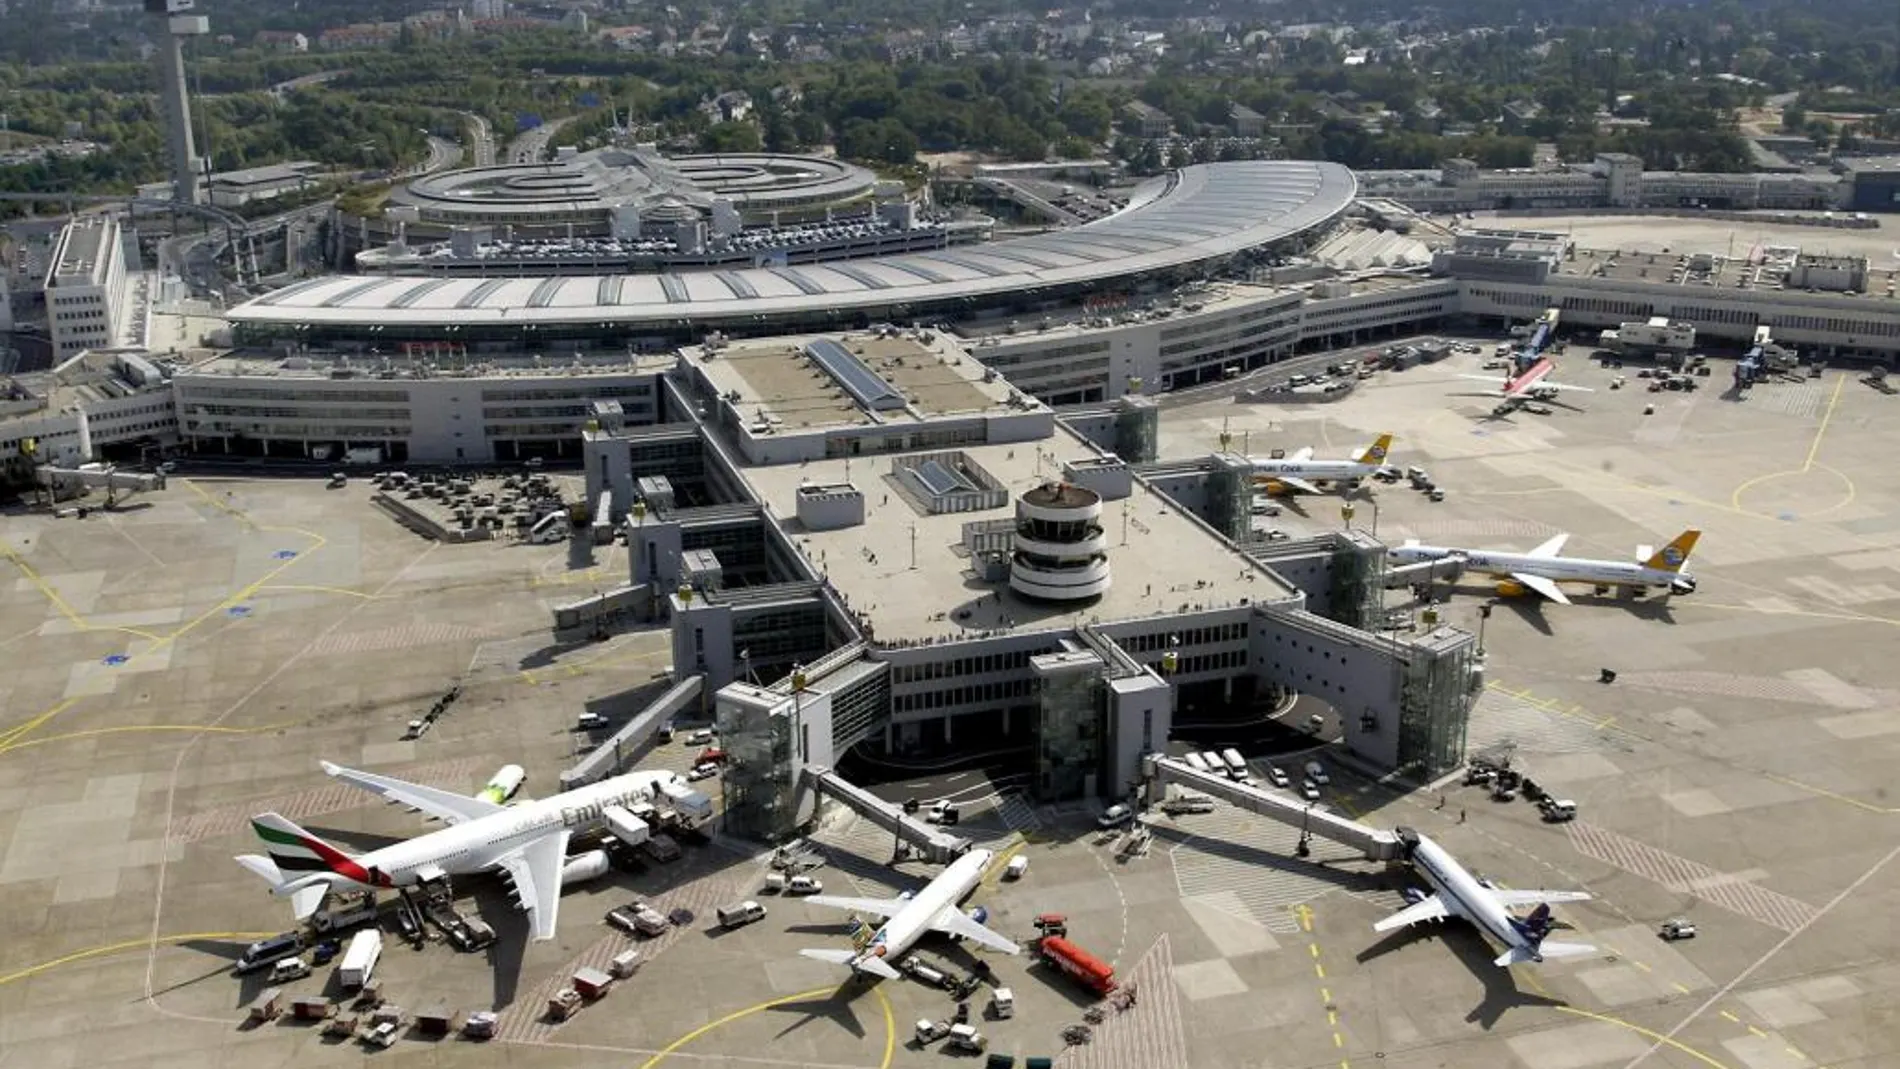 Vista aérea del aeropuerto de Düsseldorf donde ha sido detenido el presunto terrorista